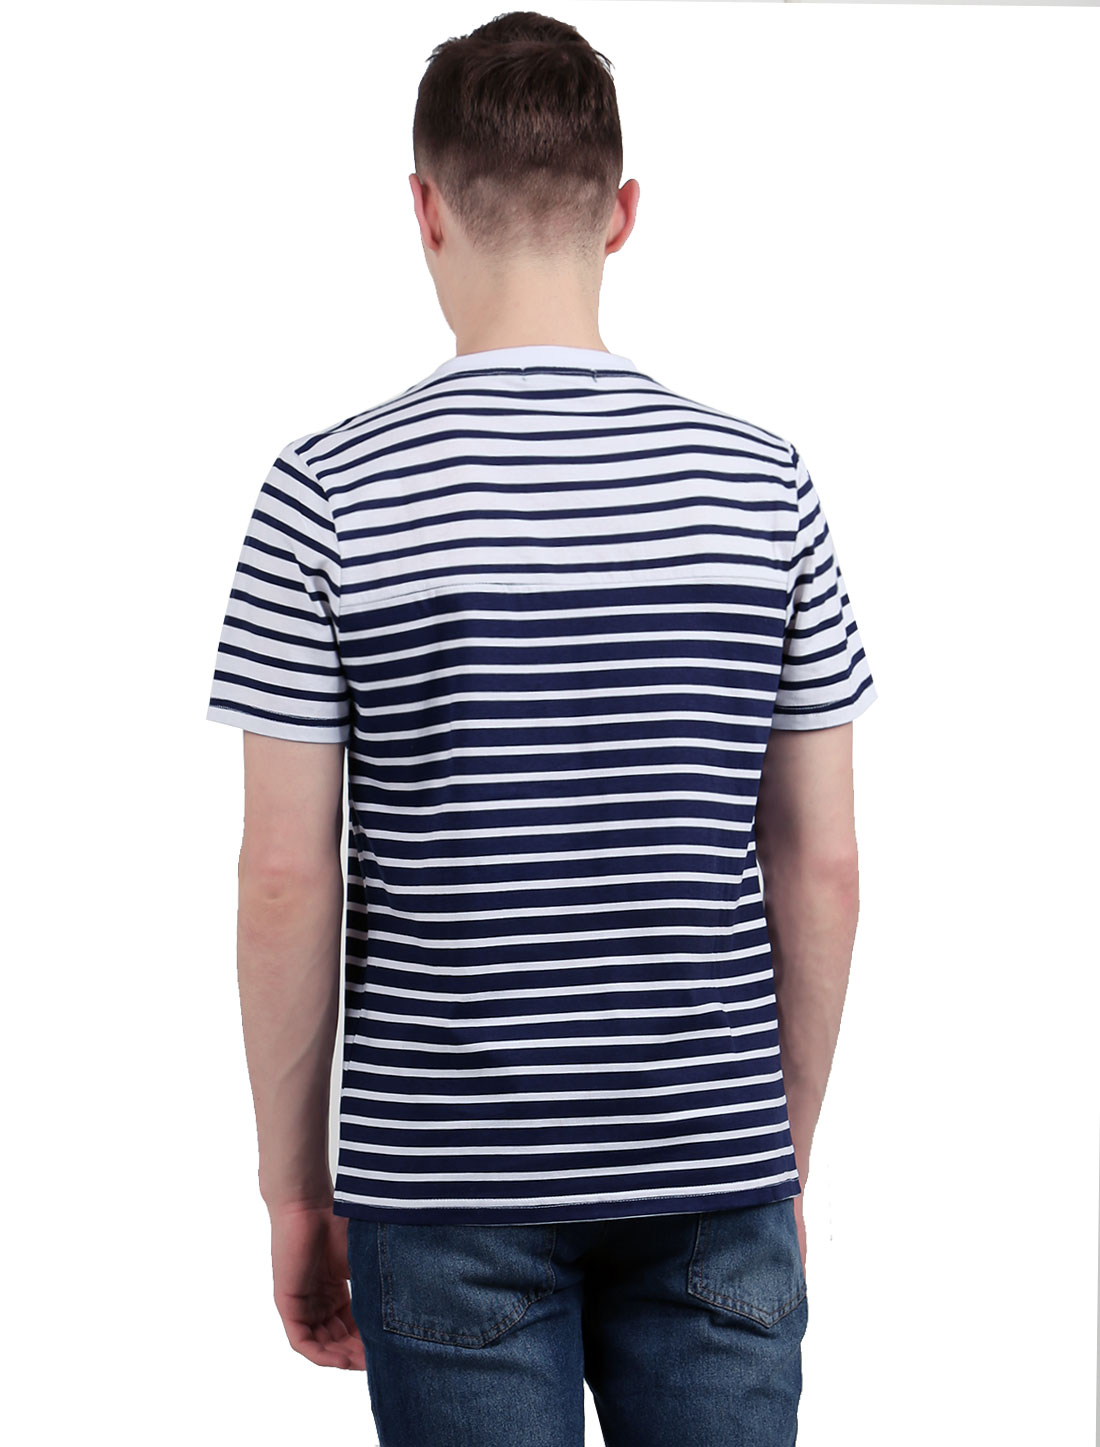 Unique Bargains Men's Stripes Crew Neckline Short Sleeves Tee Shirt Blue (Size M / 40)